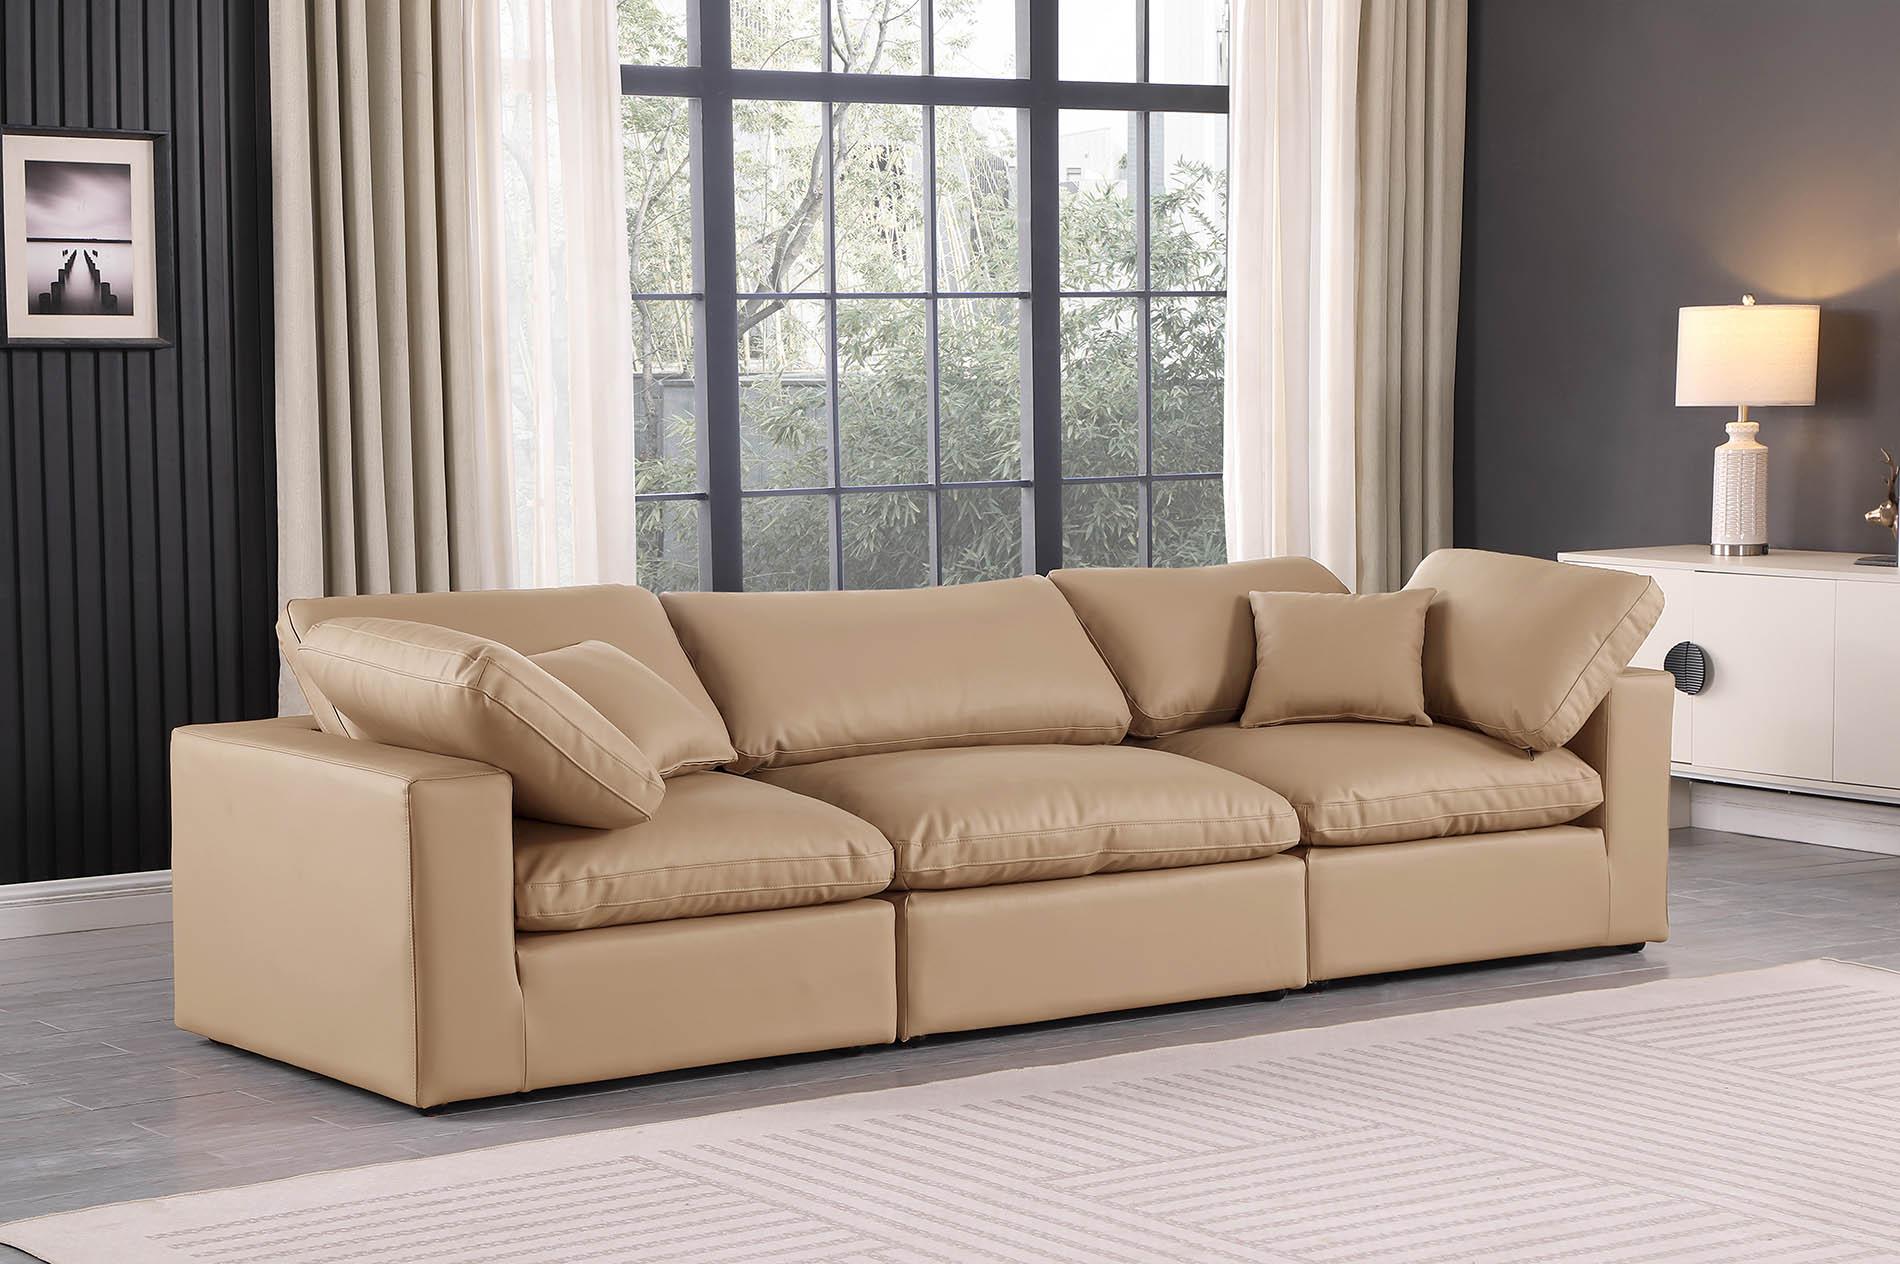 

    
Tan Vegan Leather Modular Sofa COMFY 188Tan-S119 Meridian Contemporary
